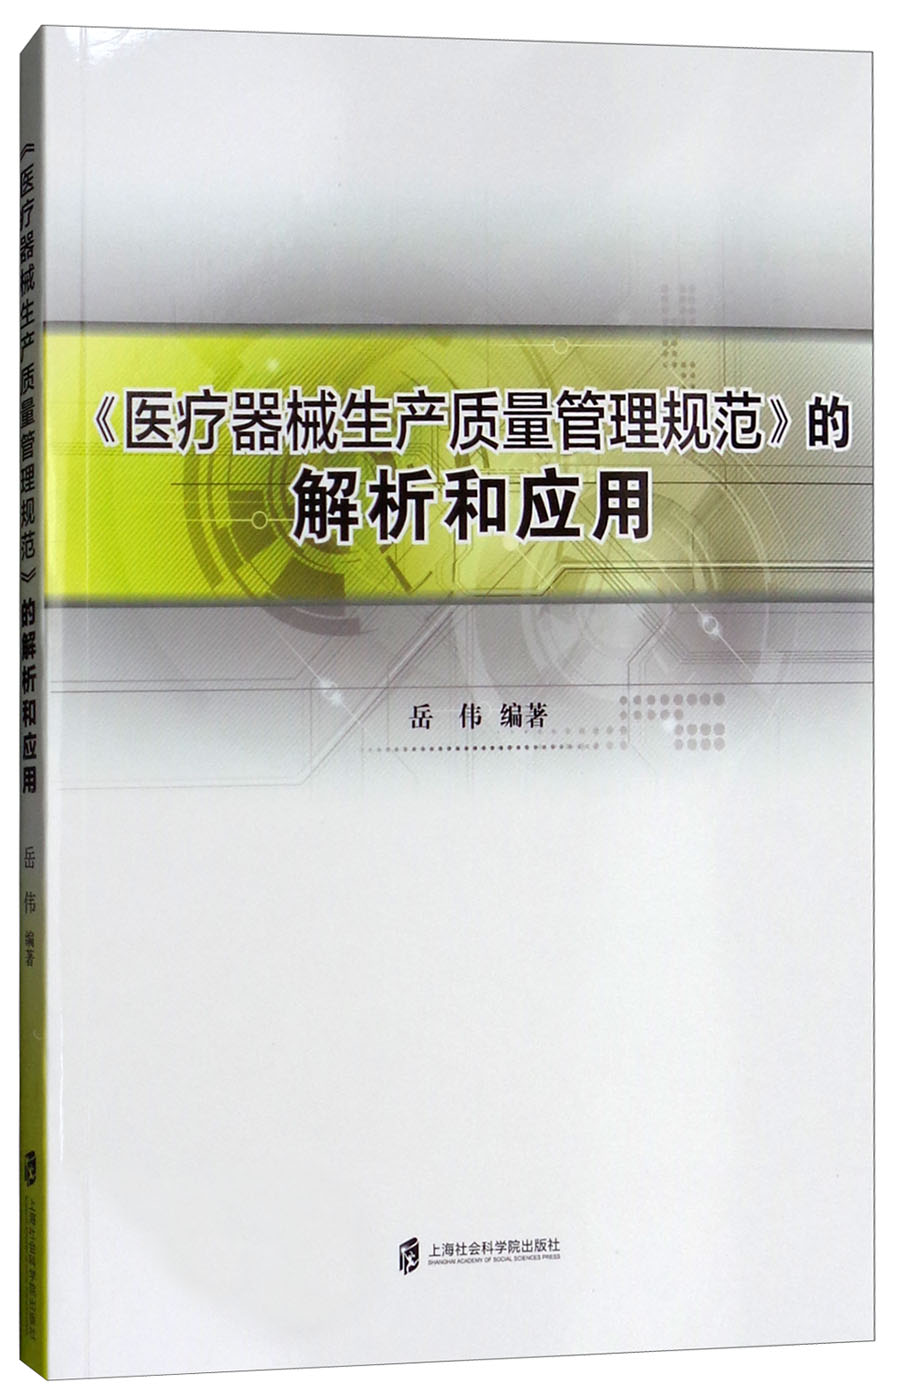 《医疗器械生产质量管理规范》的解析和应用岳伟9787552009309 txt格式下载